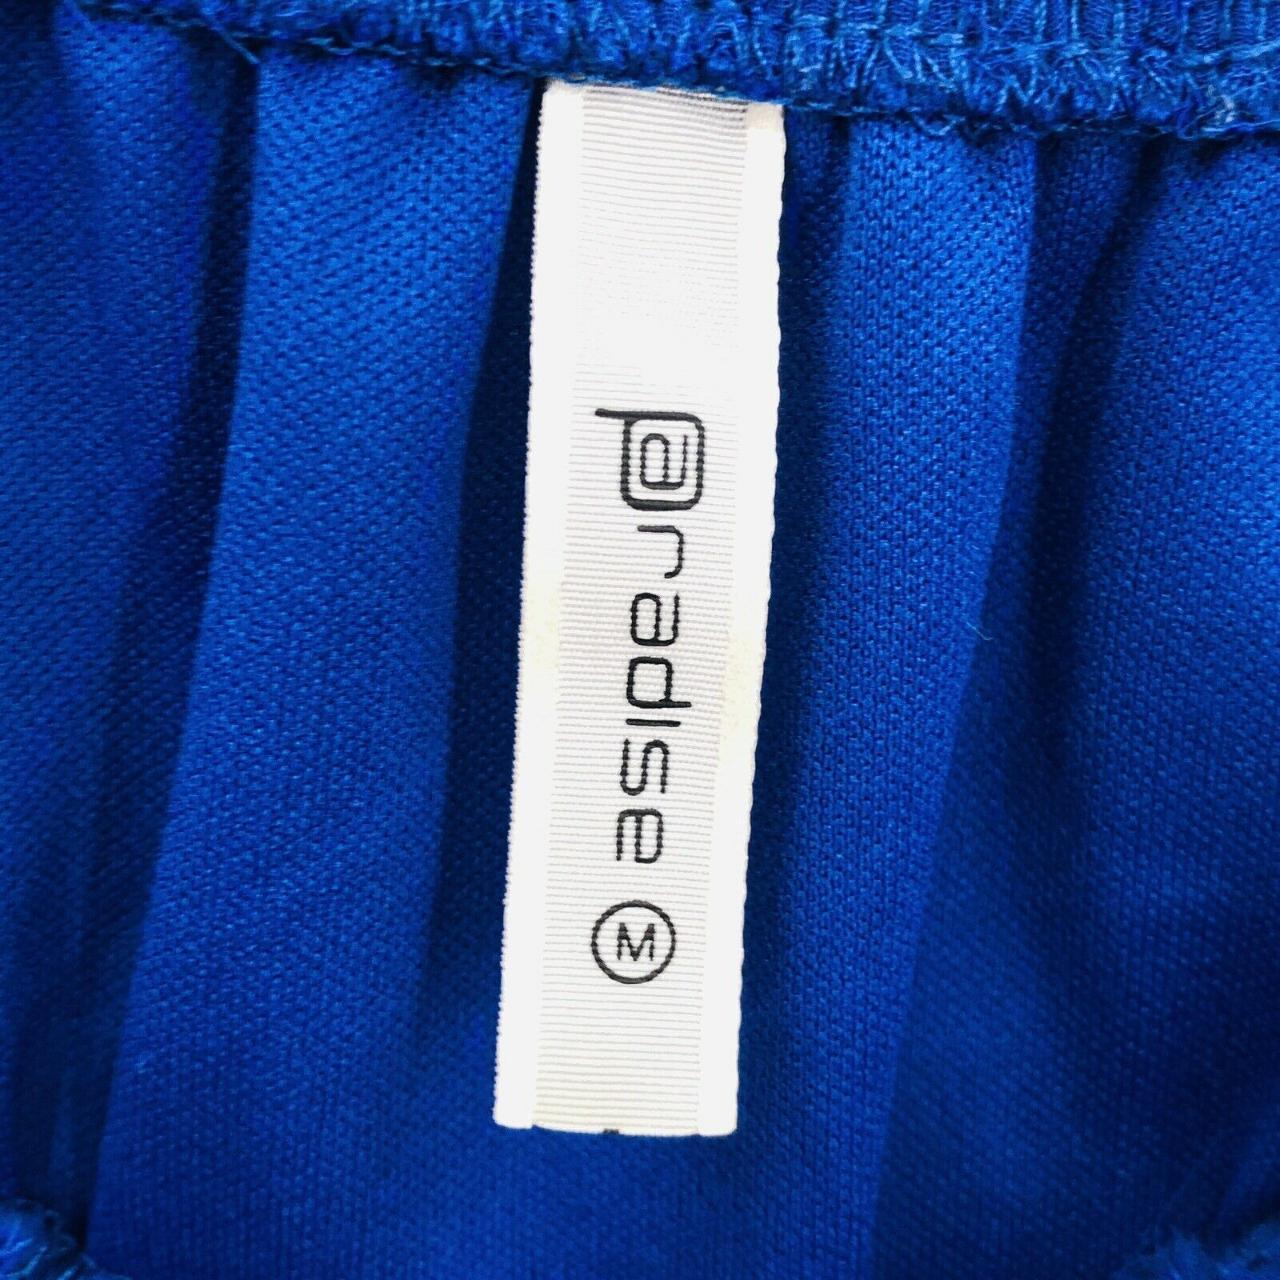 Product Image 4 - PARADISE Strapless Blue Dress 

Hi